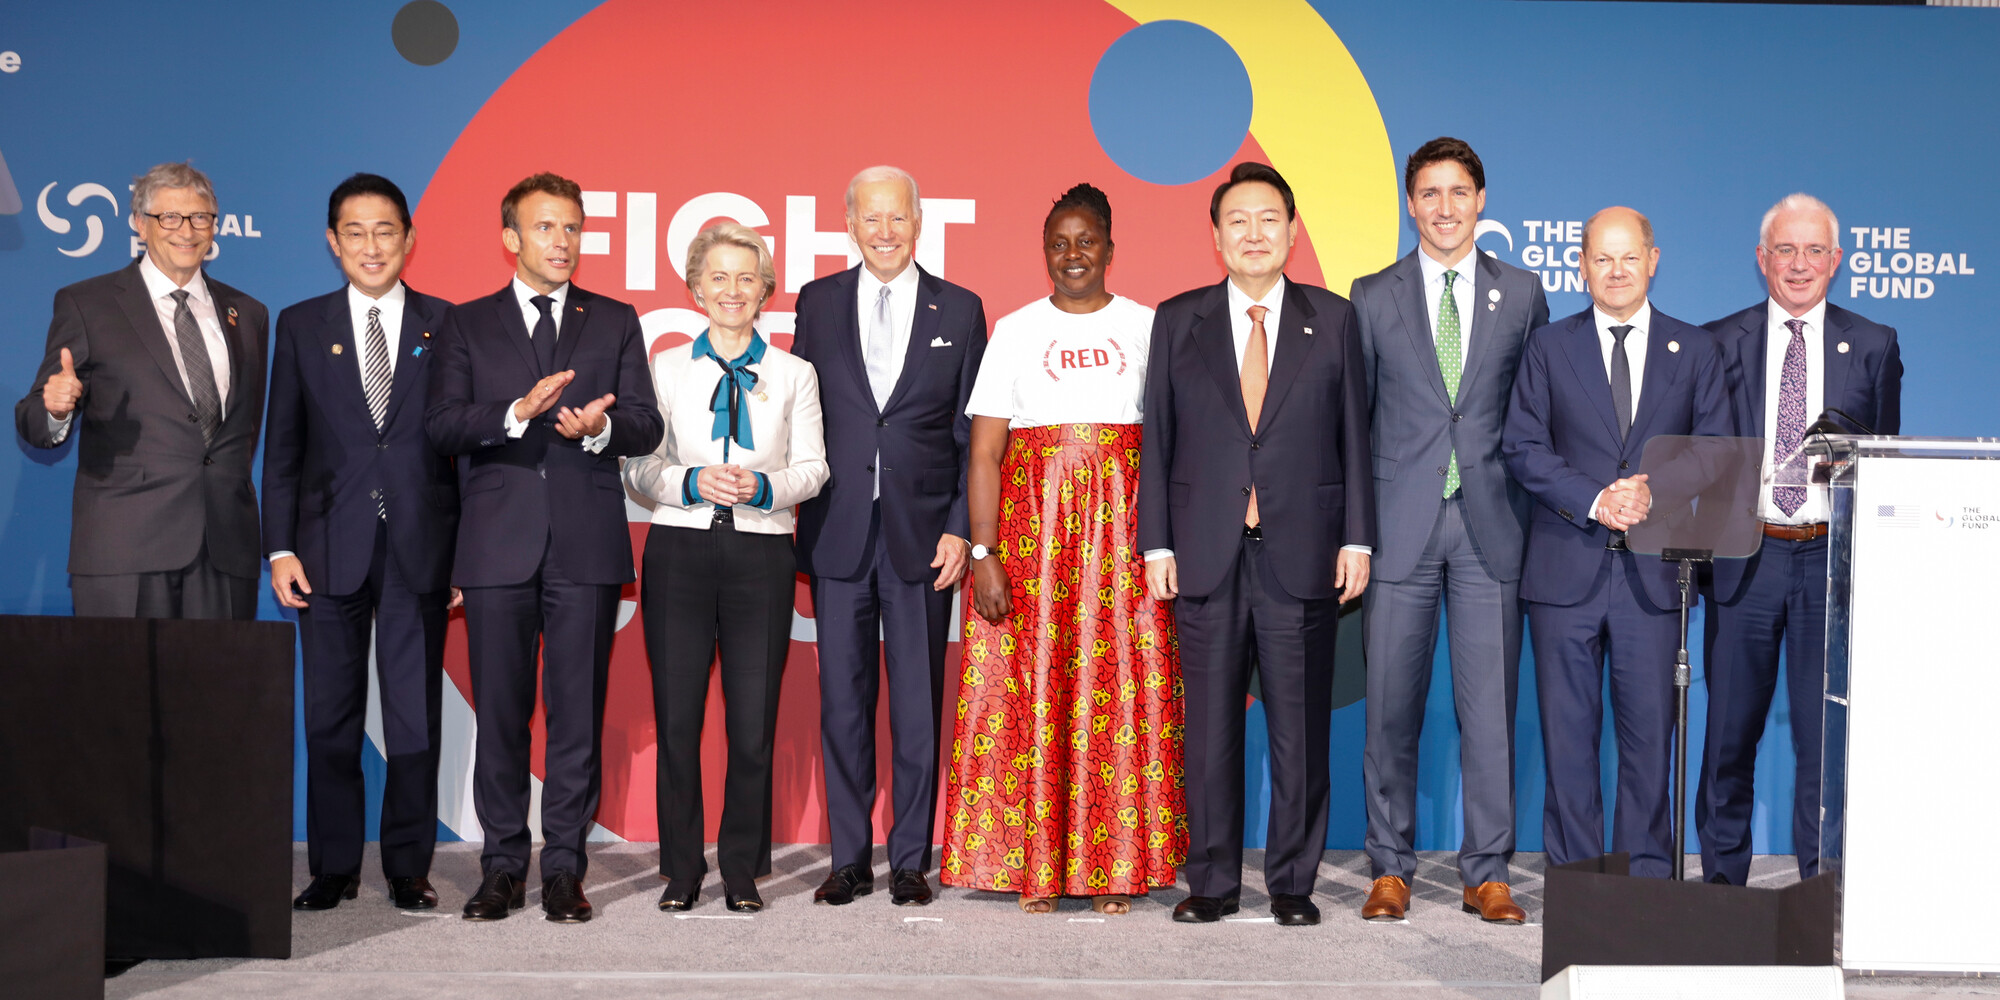 <p>Les conférenciers présents à la séance présidentielle de la septième Conférence de reconstitution des ressources du partenariat du Fonds mondial accueillent l’annonce de promesses de dons totalisant – pour l’instant – 14,25 milliards de dollars US en vue de la lutte contre le VIH, la tuberculose et le paludisme pour les trois prochaines années. De gauche à droite : M. Bill Gates, coprésident de la Fondation Bill &amp; Melinda Gates, Son Excellence M. Fumio Kishida, premier ministre du Japon, Son Excellence M. Emmanuel Macron, président de la République française, Son Excellence D<sup>re</sup> Ursula von der Leyen, présidente de la Commission européenne, l’Honorable Joseph R. Biden, Jr., président des États-Unis, M<sup>me</sup> Connie Mudenda, ambassadrice de (RED), Son Excellence M. Yoon Suk-yeol, président de la République de Corée, le Très Honorable Justin Trudeau, premier ministre du Canada, Son Excellence Olaf Scholz, chancelier de l’Allemagne et M. Peter Sands, directeur exécutif du Fonds mondial. <em>The Global Fund/Tim Knox</em></p>